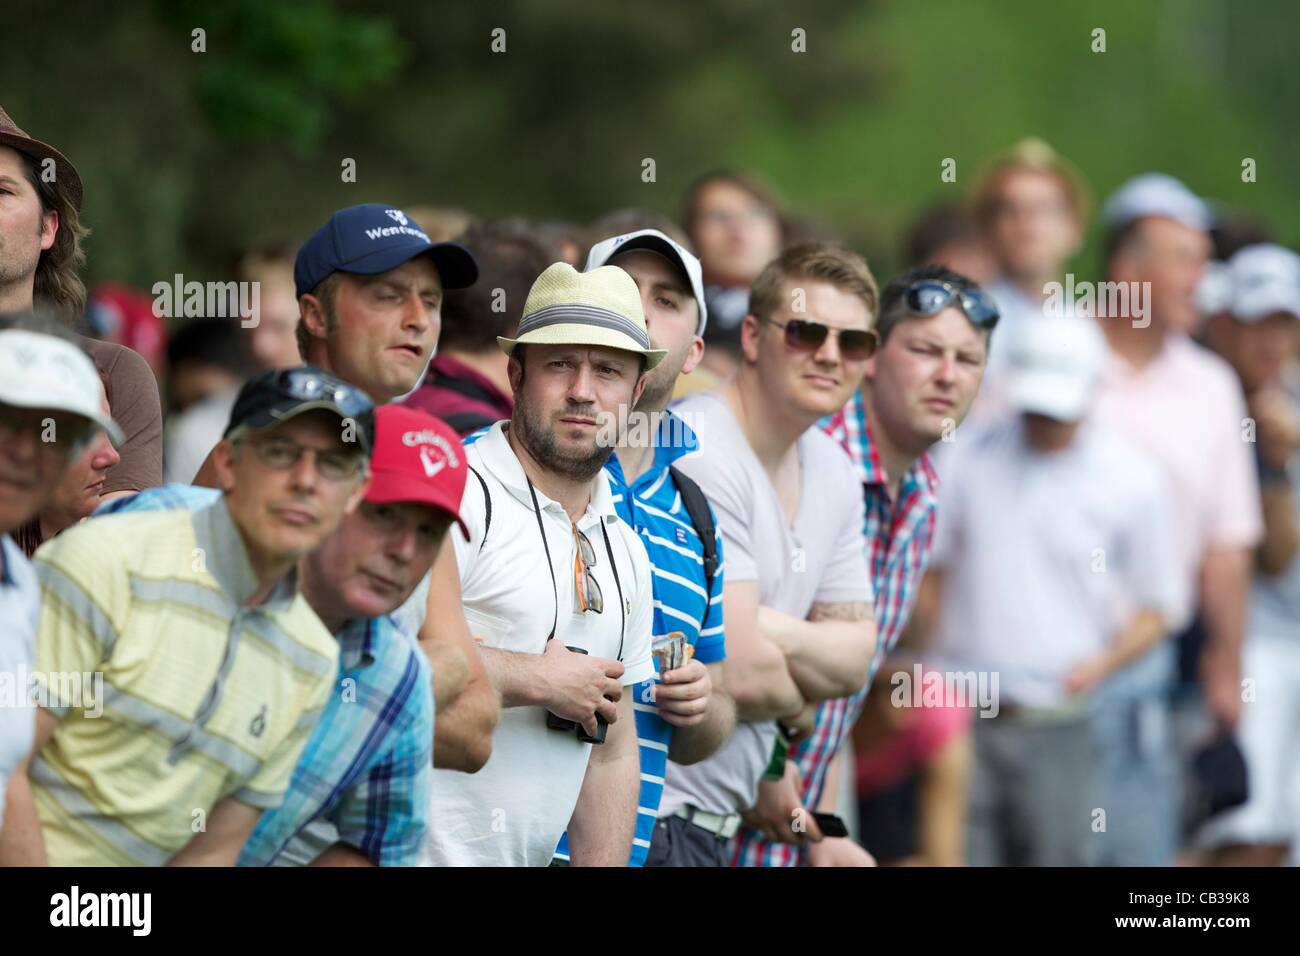 27.05.2012 Wentworth, Inghilterra. Gli spettatori nel giorno finale della BMW campionato di PGA. Foto Stock